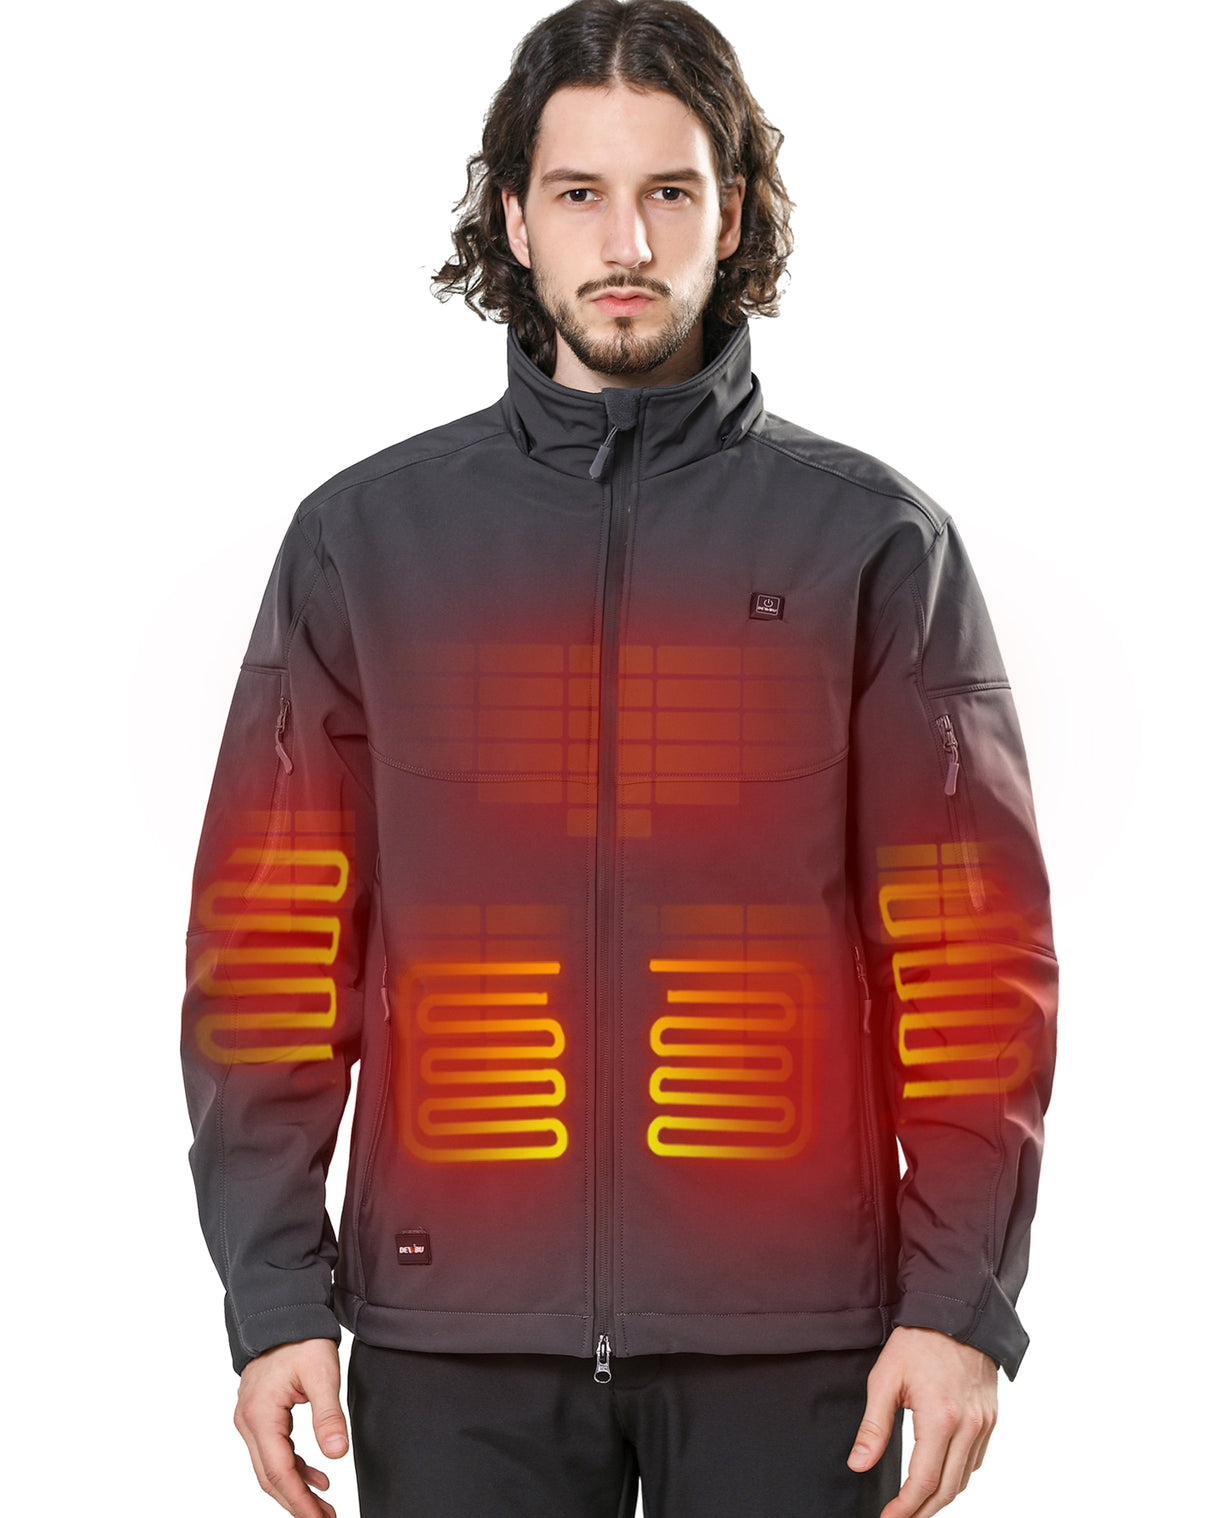 Men's Heated Vest with Retractable Heating Hood – iHood